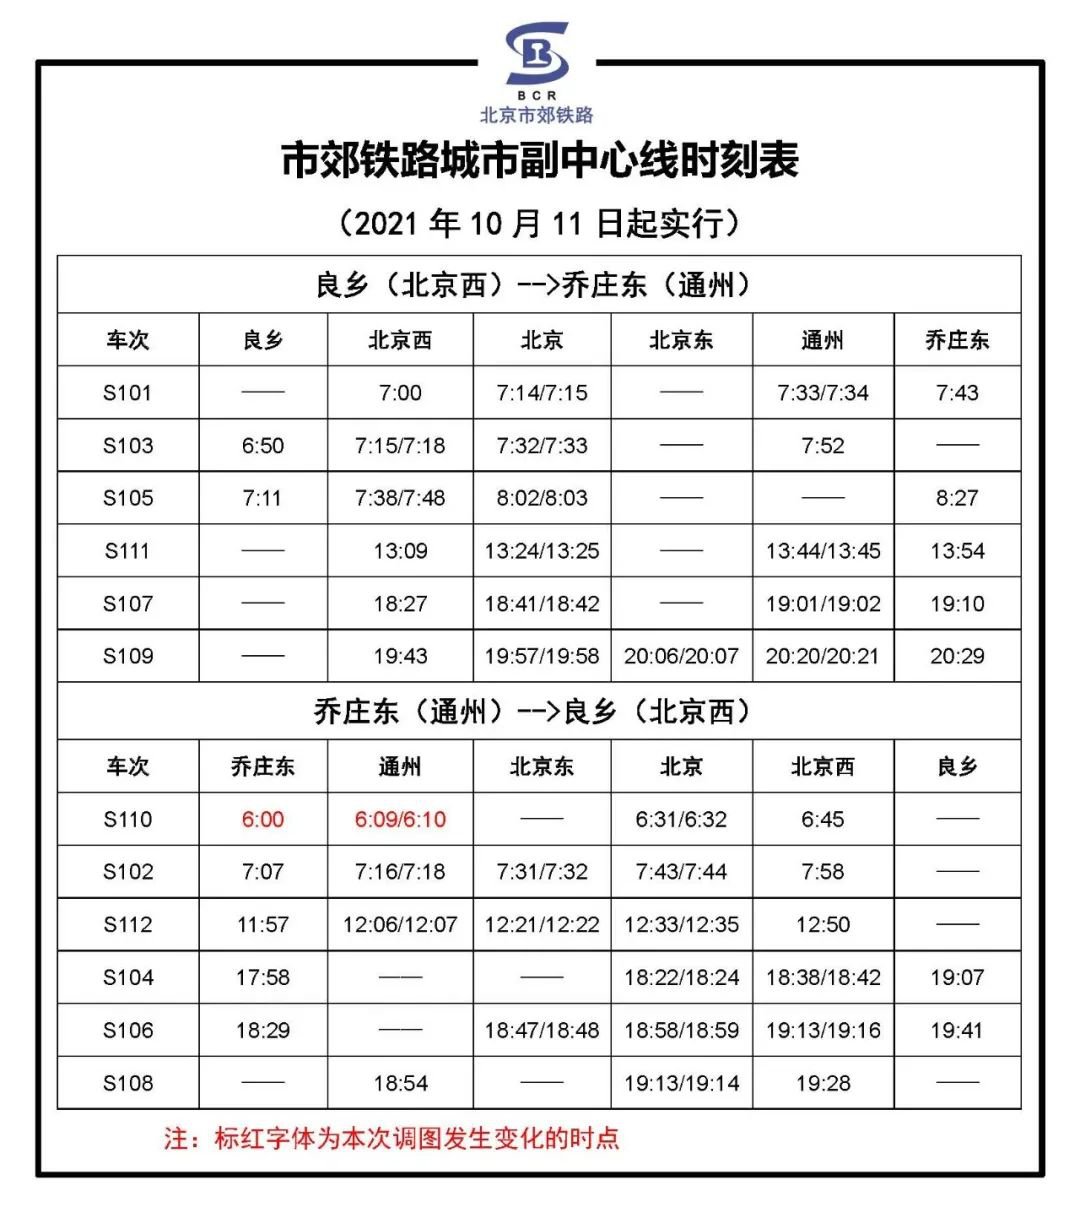 上海金山铁路最新时刻表(12月22日-28日) - 上海慢慢看